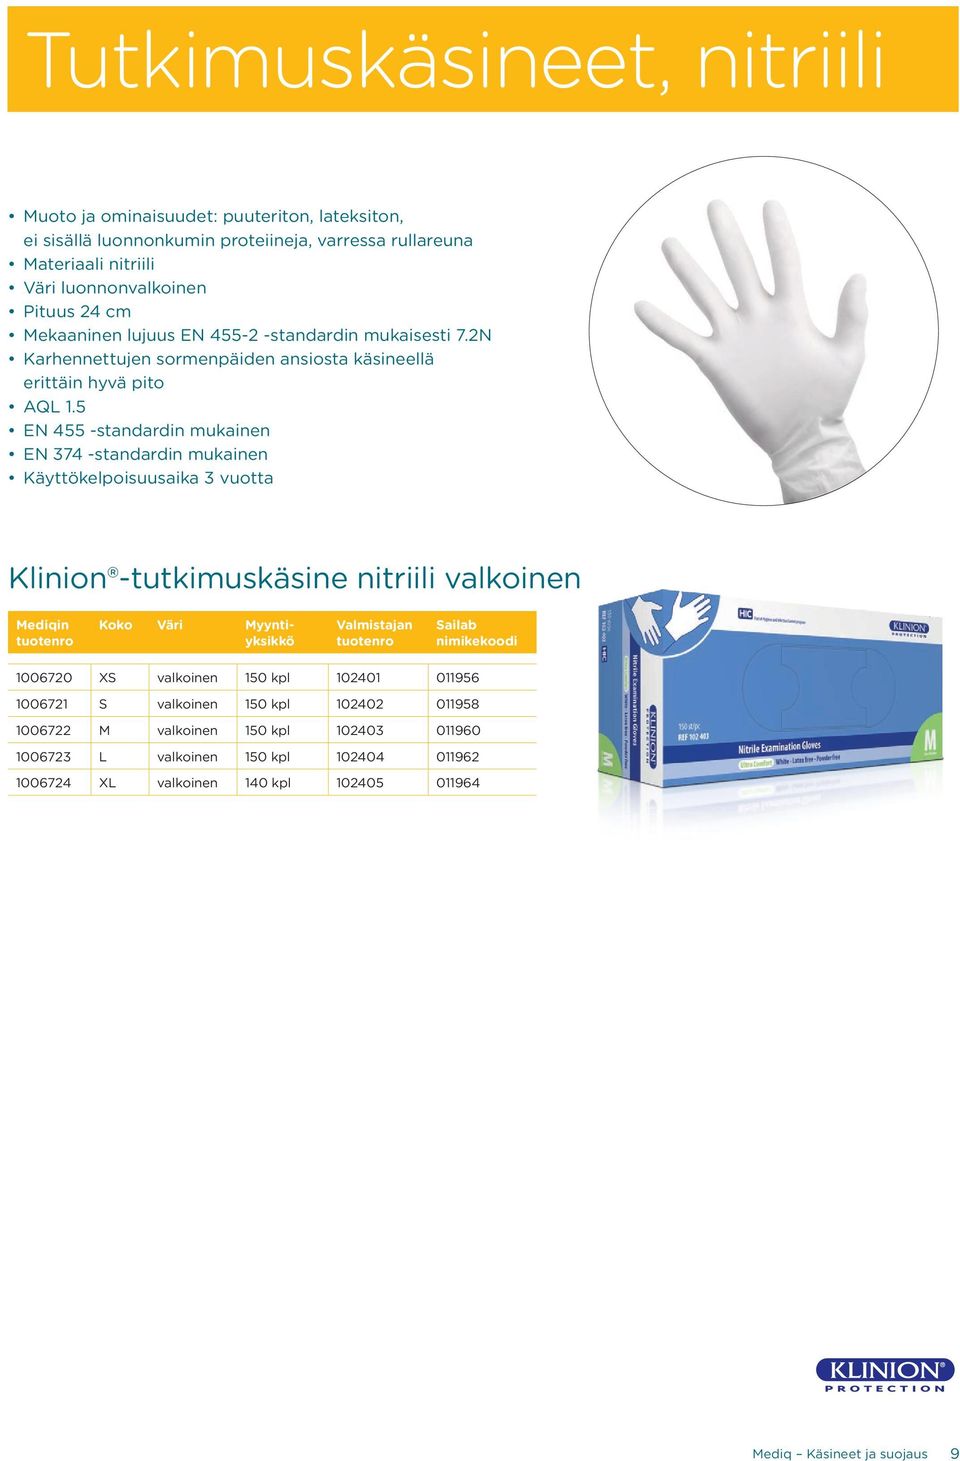 5 EN 455 -standardin mukainen EN 374 -standardin mukainen Käyttökelpoisuusaika 3 vuotta Klinion -tutkimuskäsine nitriili valkoinen 1006720 XS valkoinen 150 kpl 102401